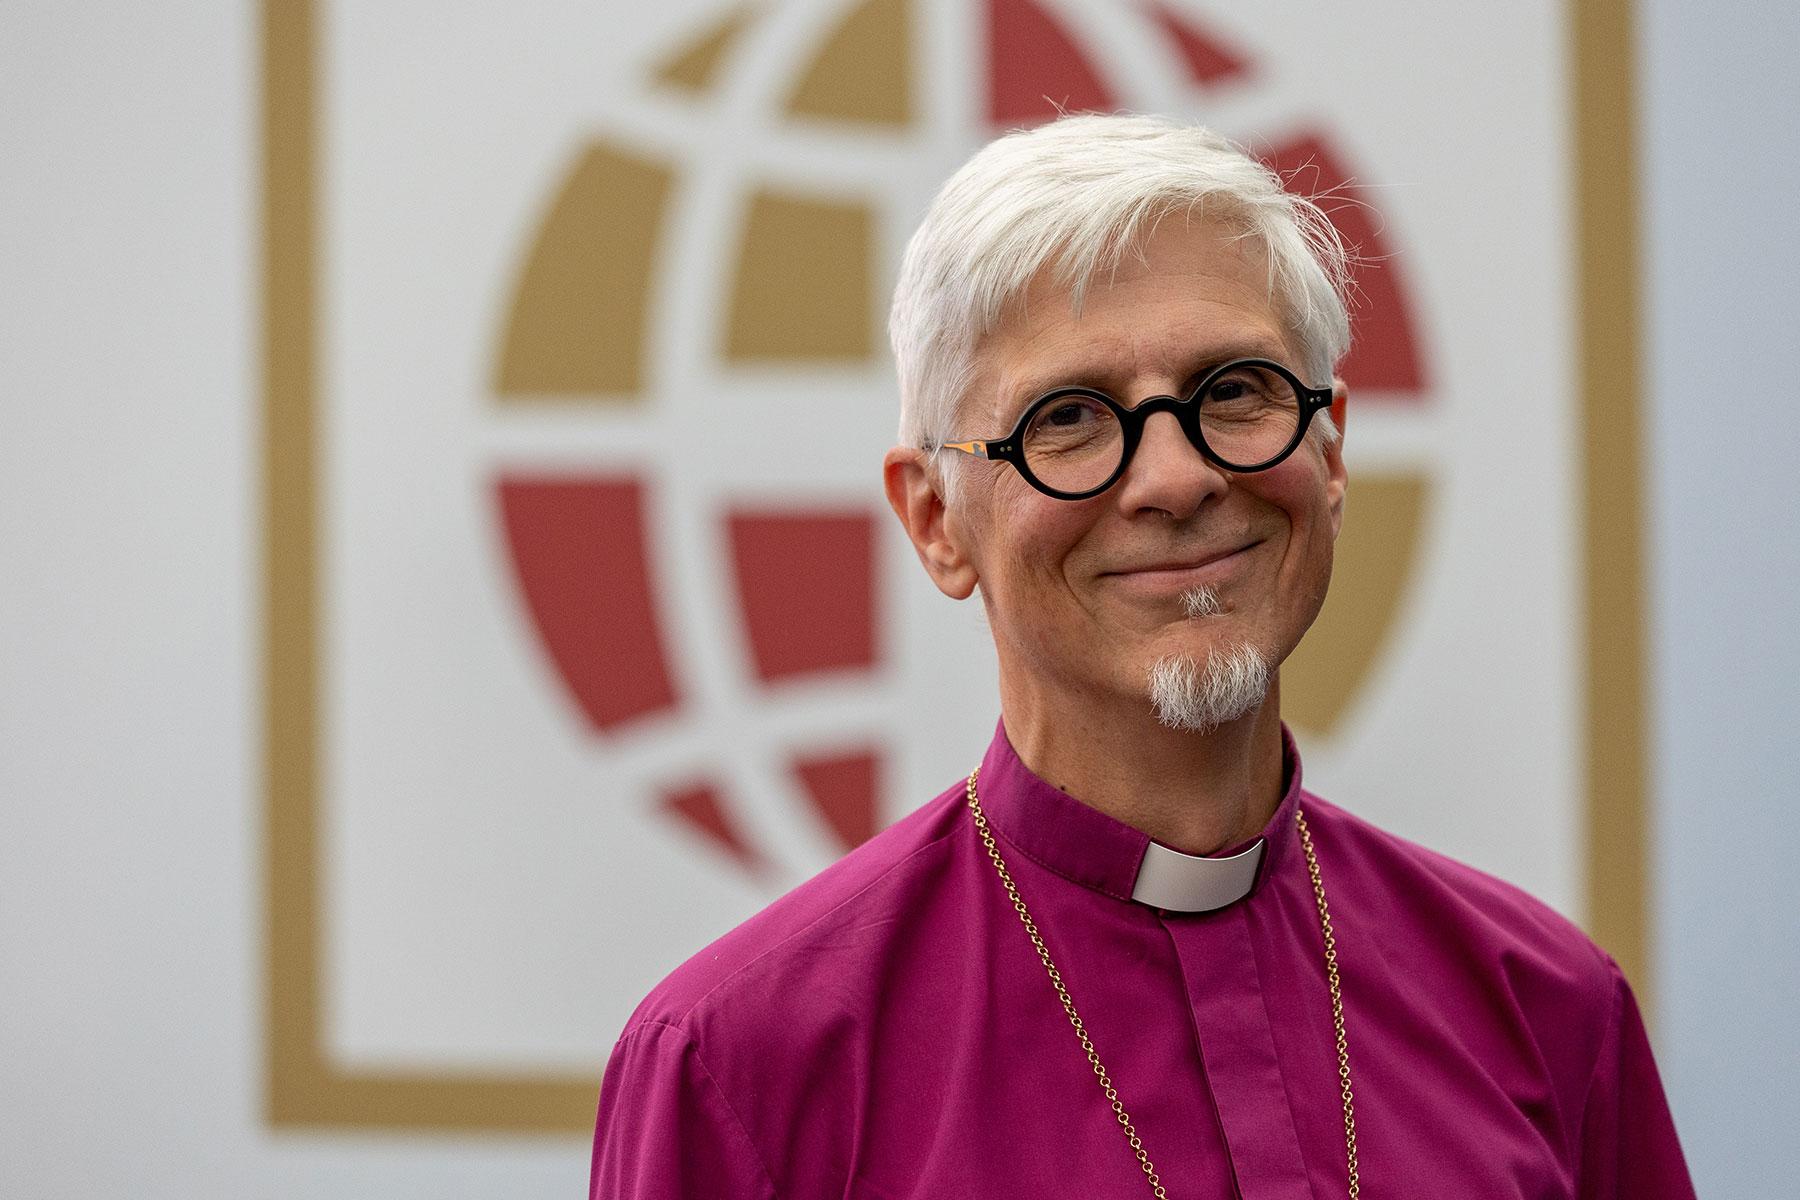 Bischof Matti Repo, Evangelisch-Lutherische Kirche Finnlands, bei der Lambeth Conference